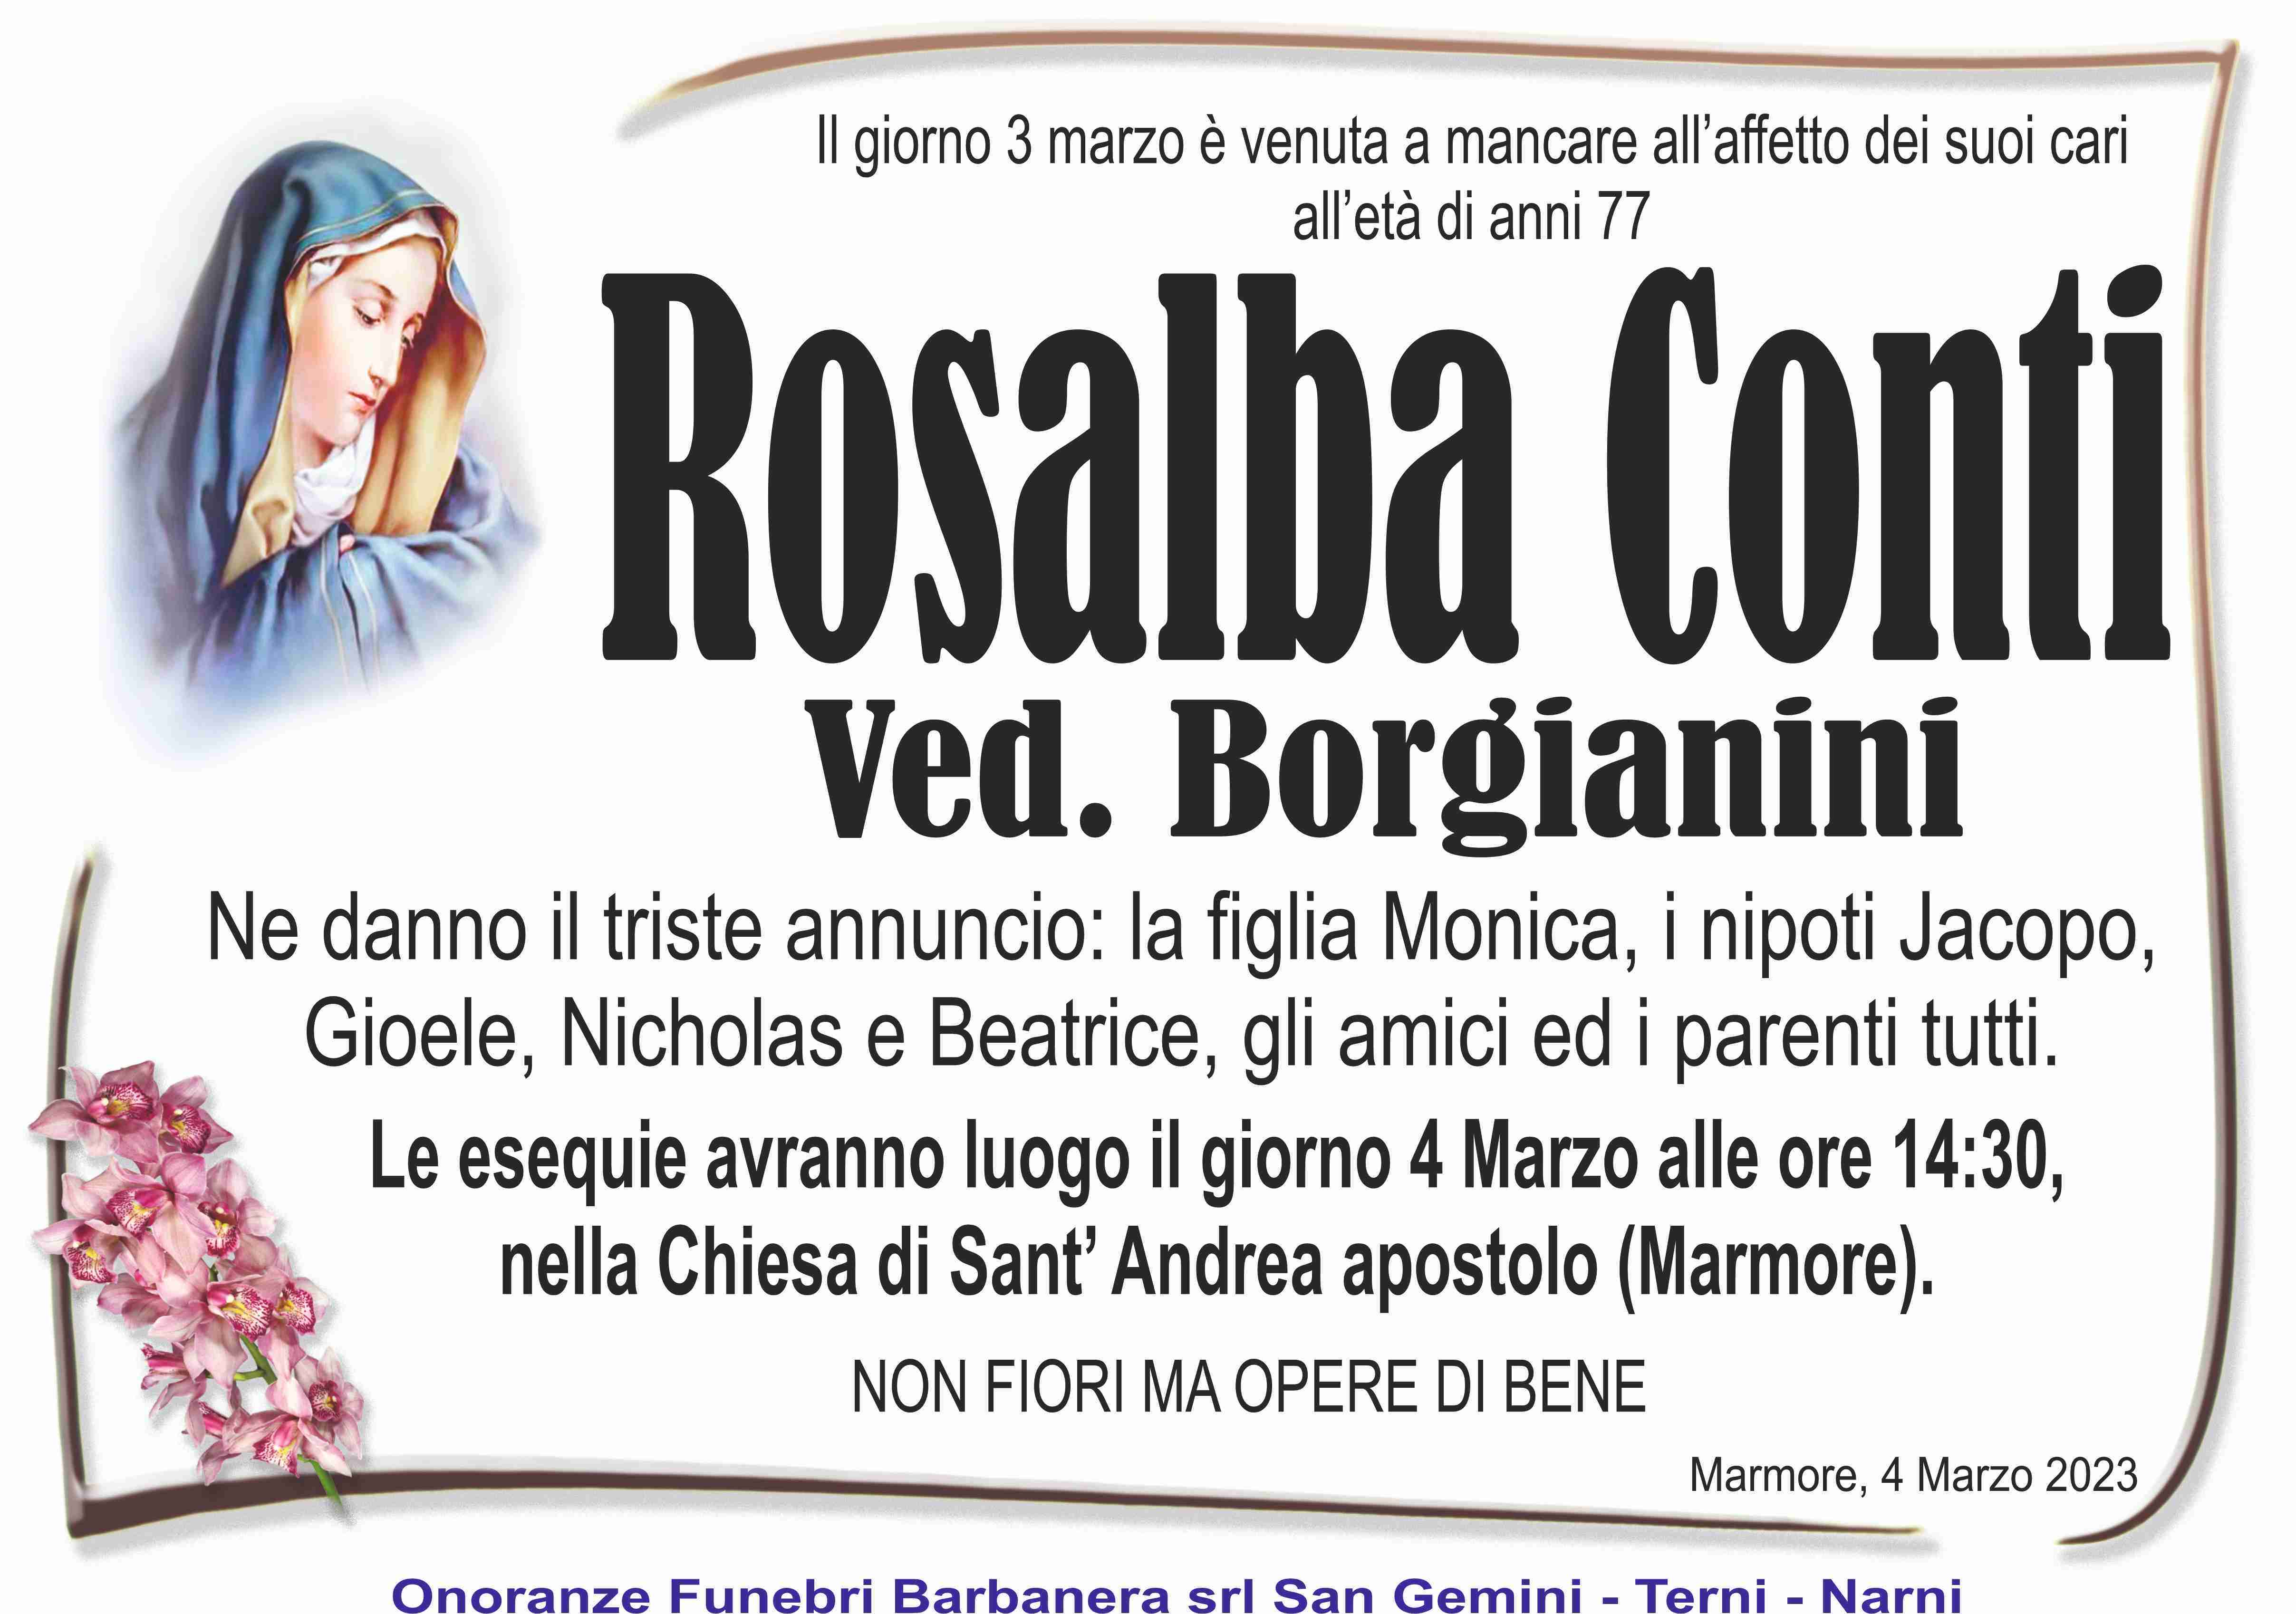 Rosalba Conti